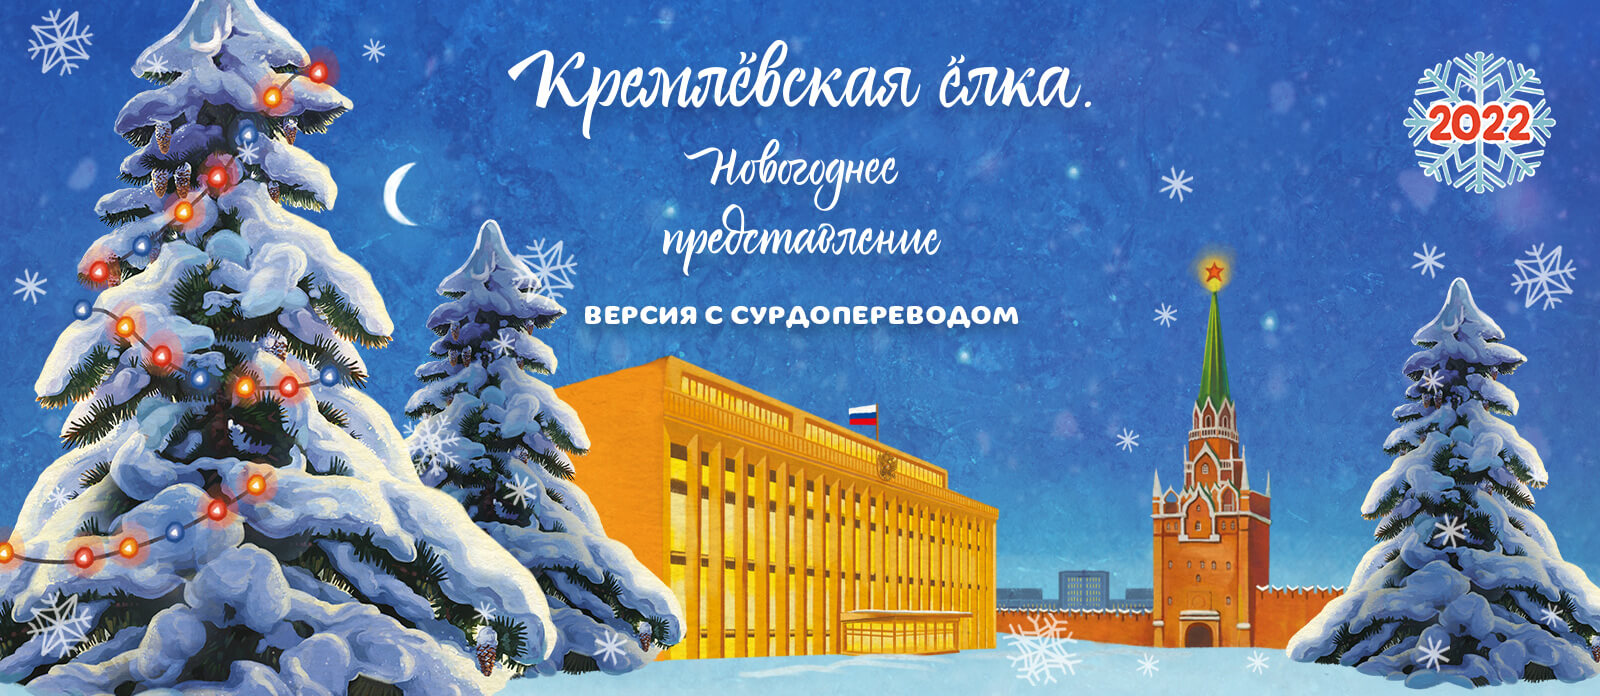 Кремлёвская ёлка. Новогоднее представление. С сурдопереводом